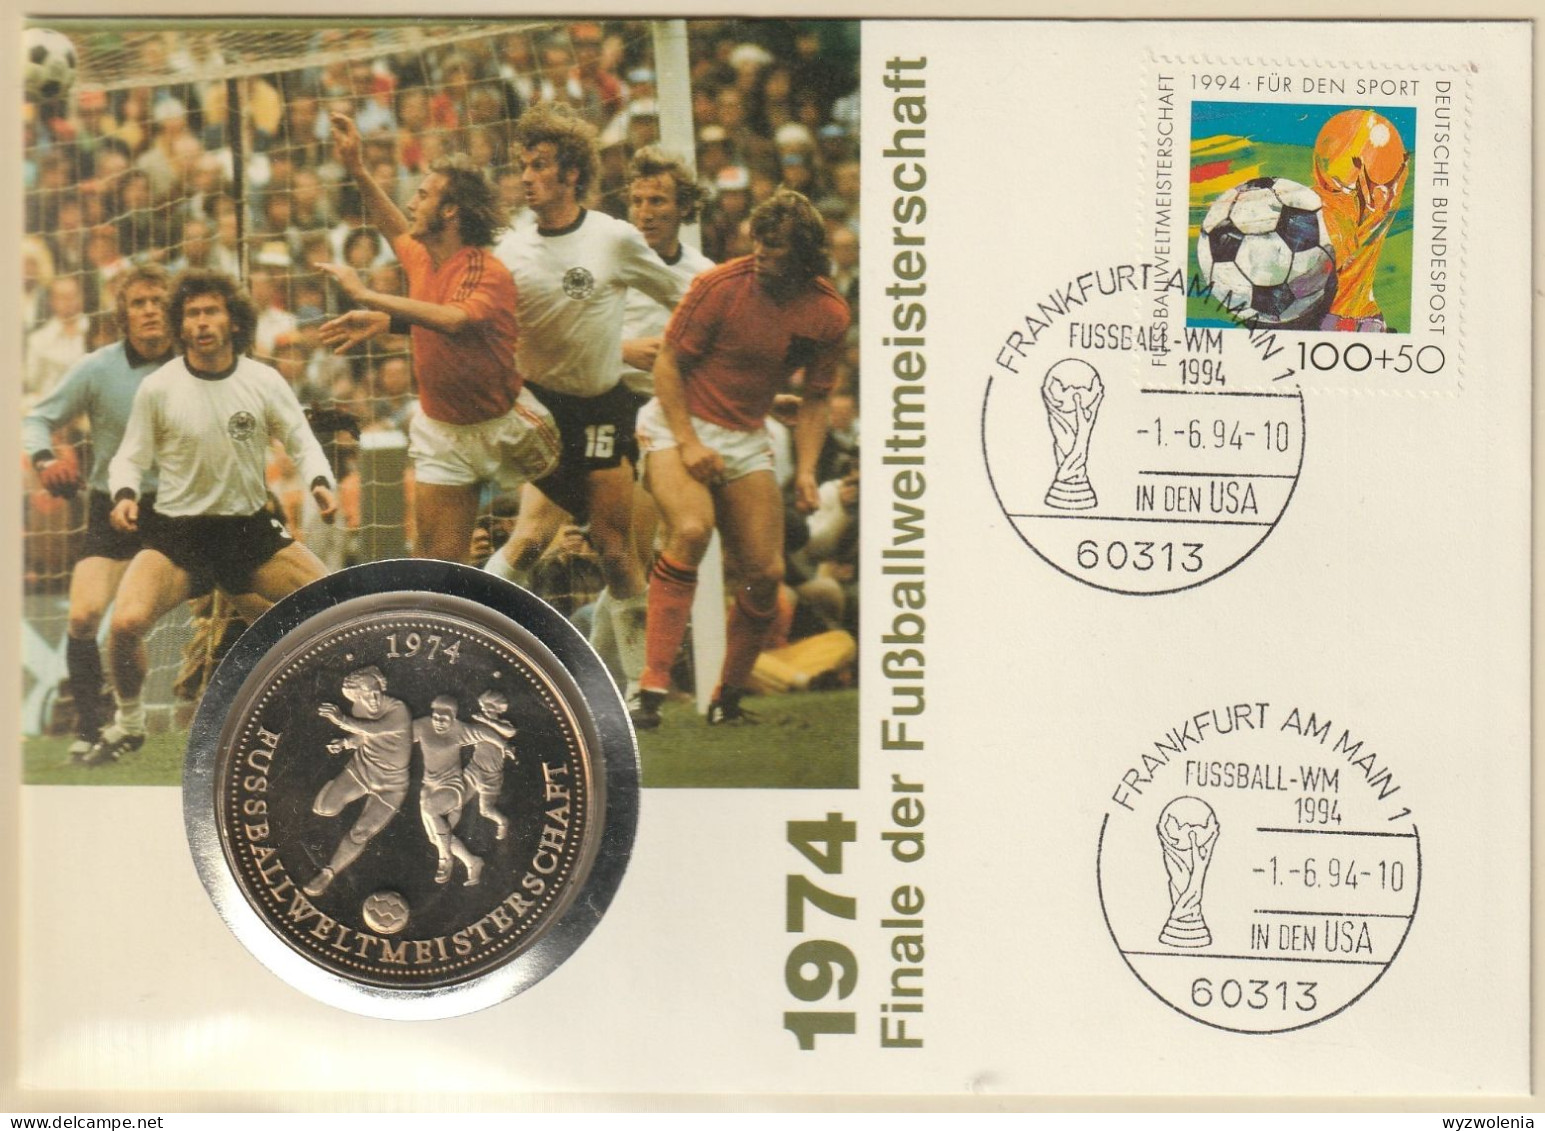 A 760) BRD 1994 Mi# 1718 SoSt Frankfurt Fußball-WM In USA; Medaille Zeigt Gewinn Der WM 1974 - 1994 – Estados Unidos